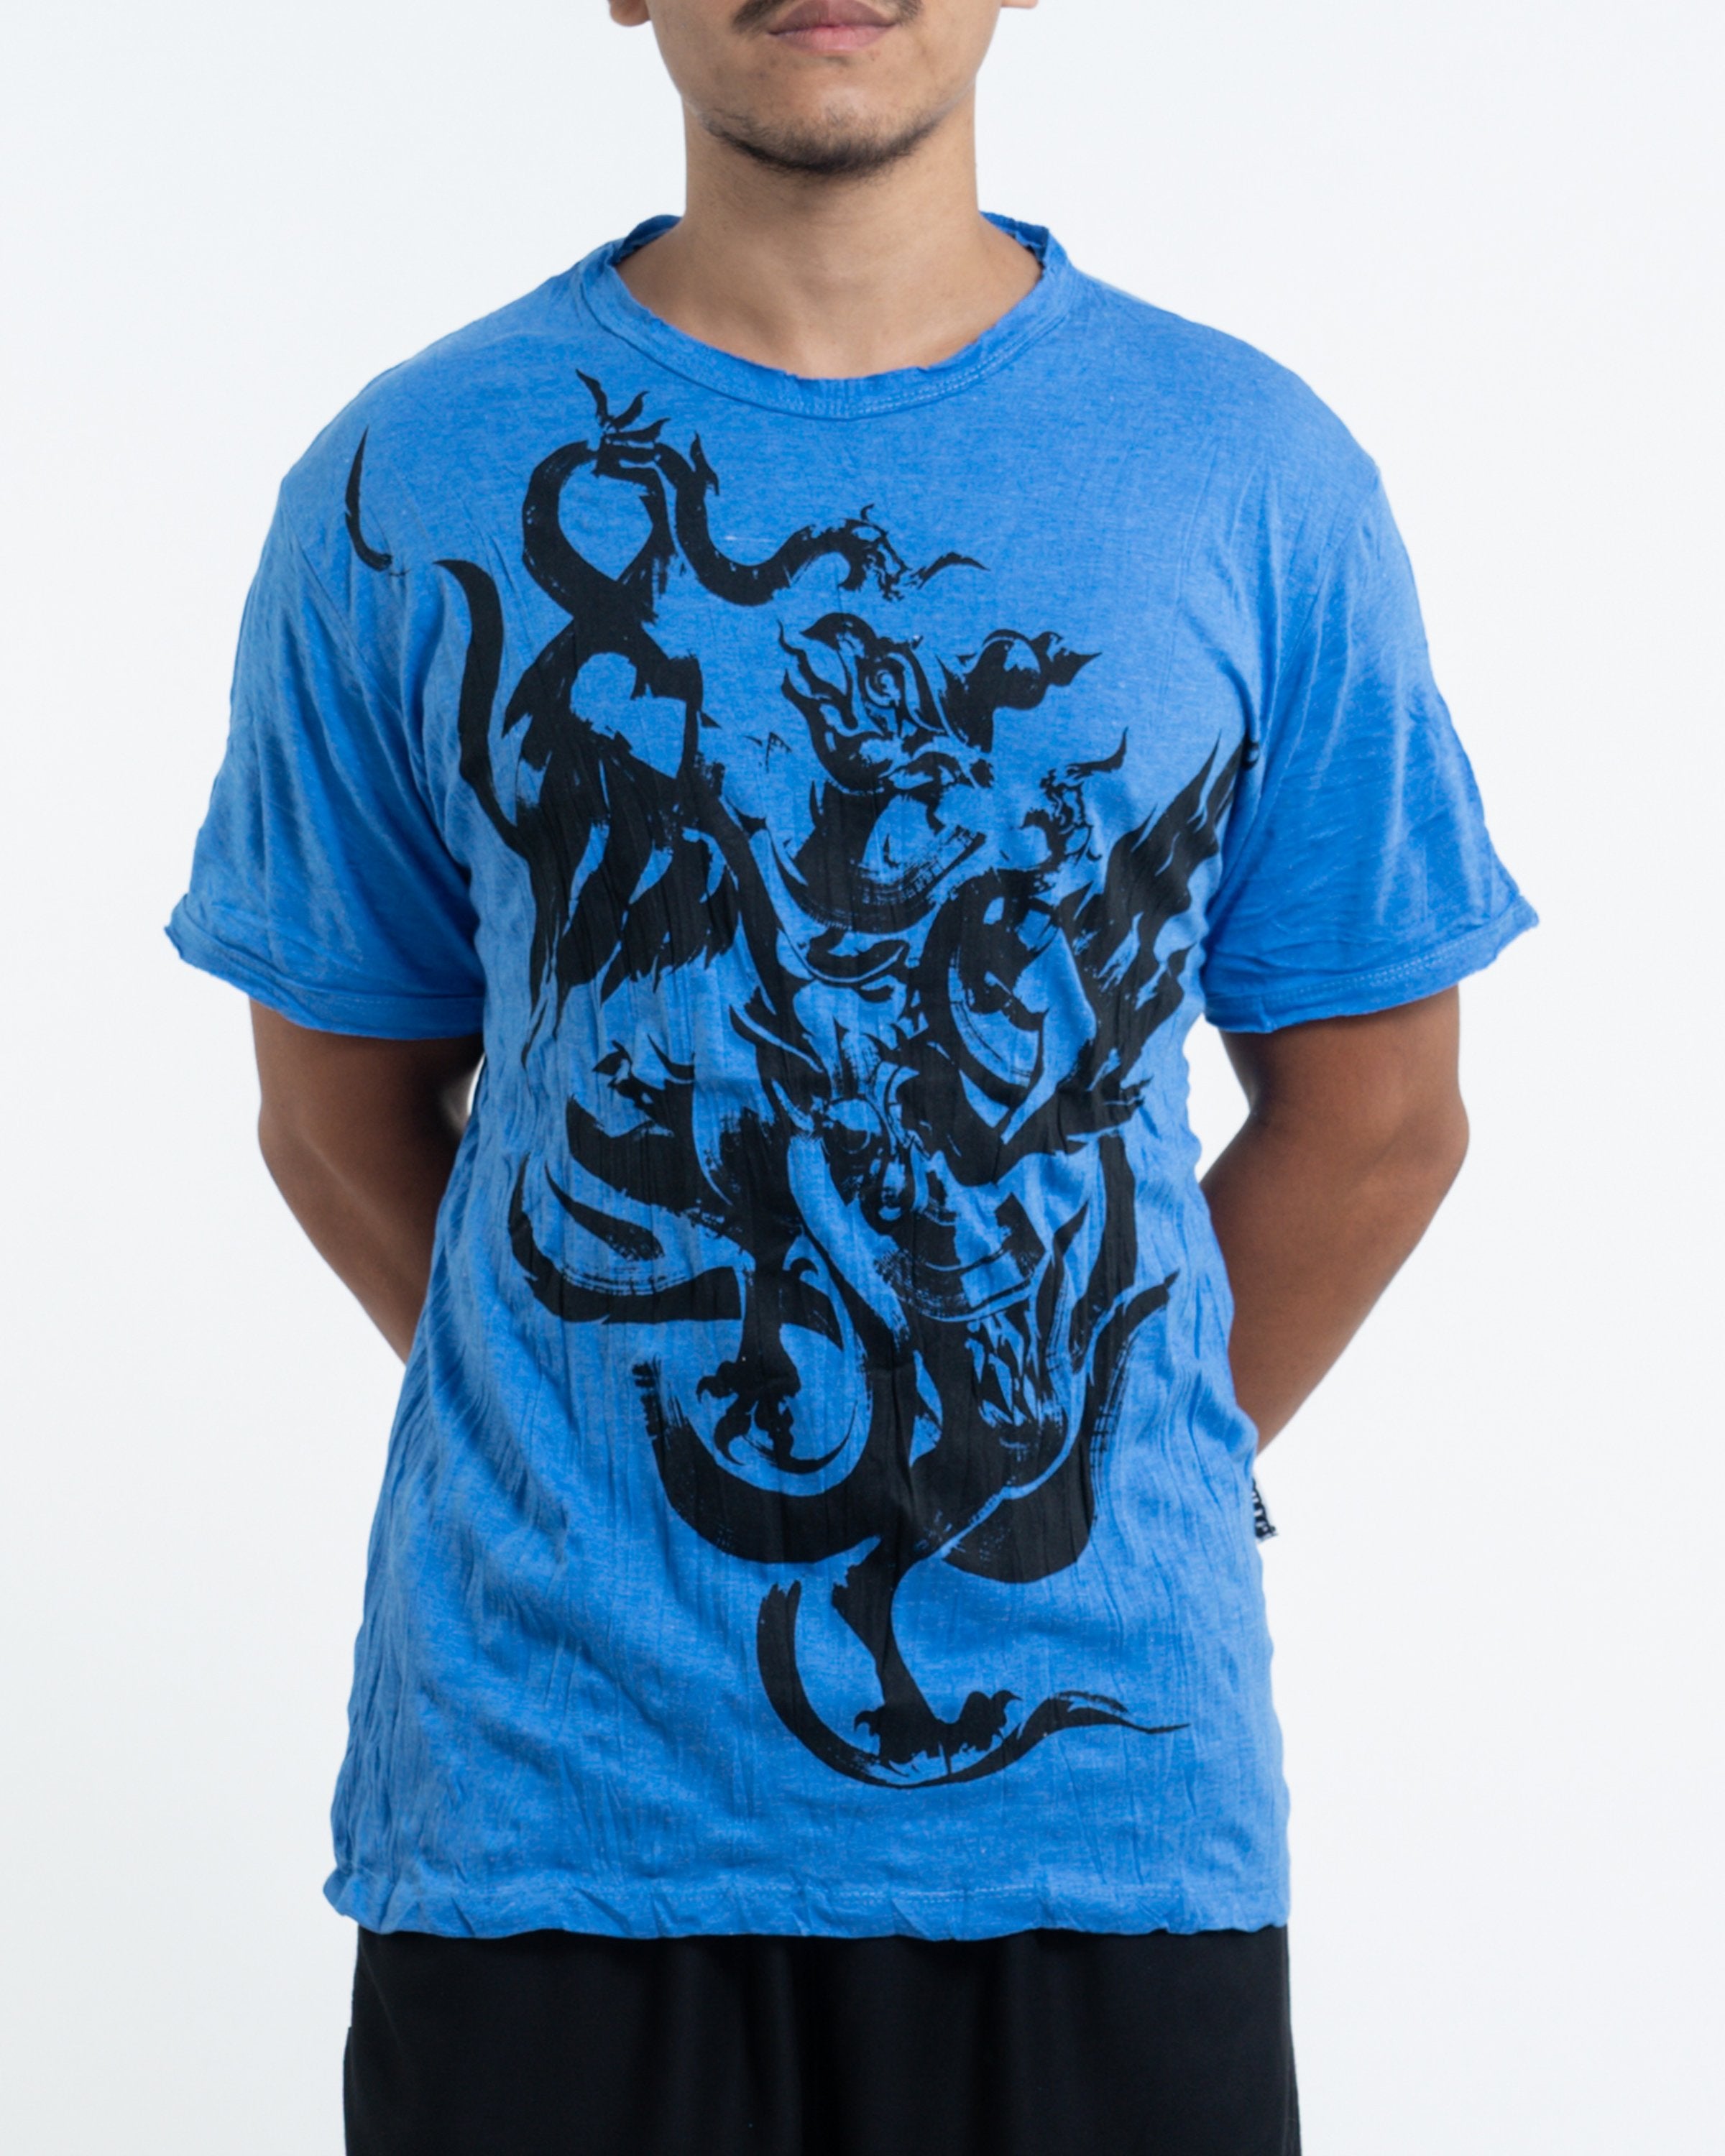 Sure Garuda T-Shirt Blue – Sure Wholesale